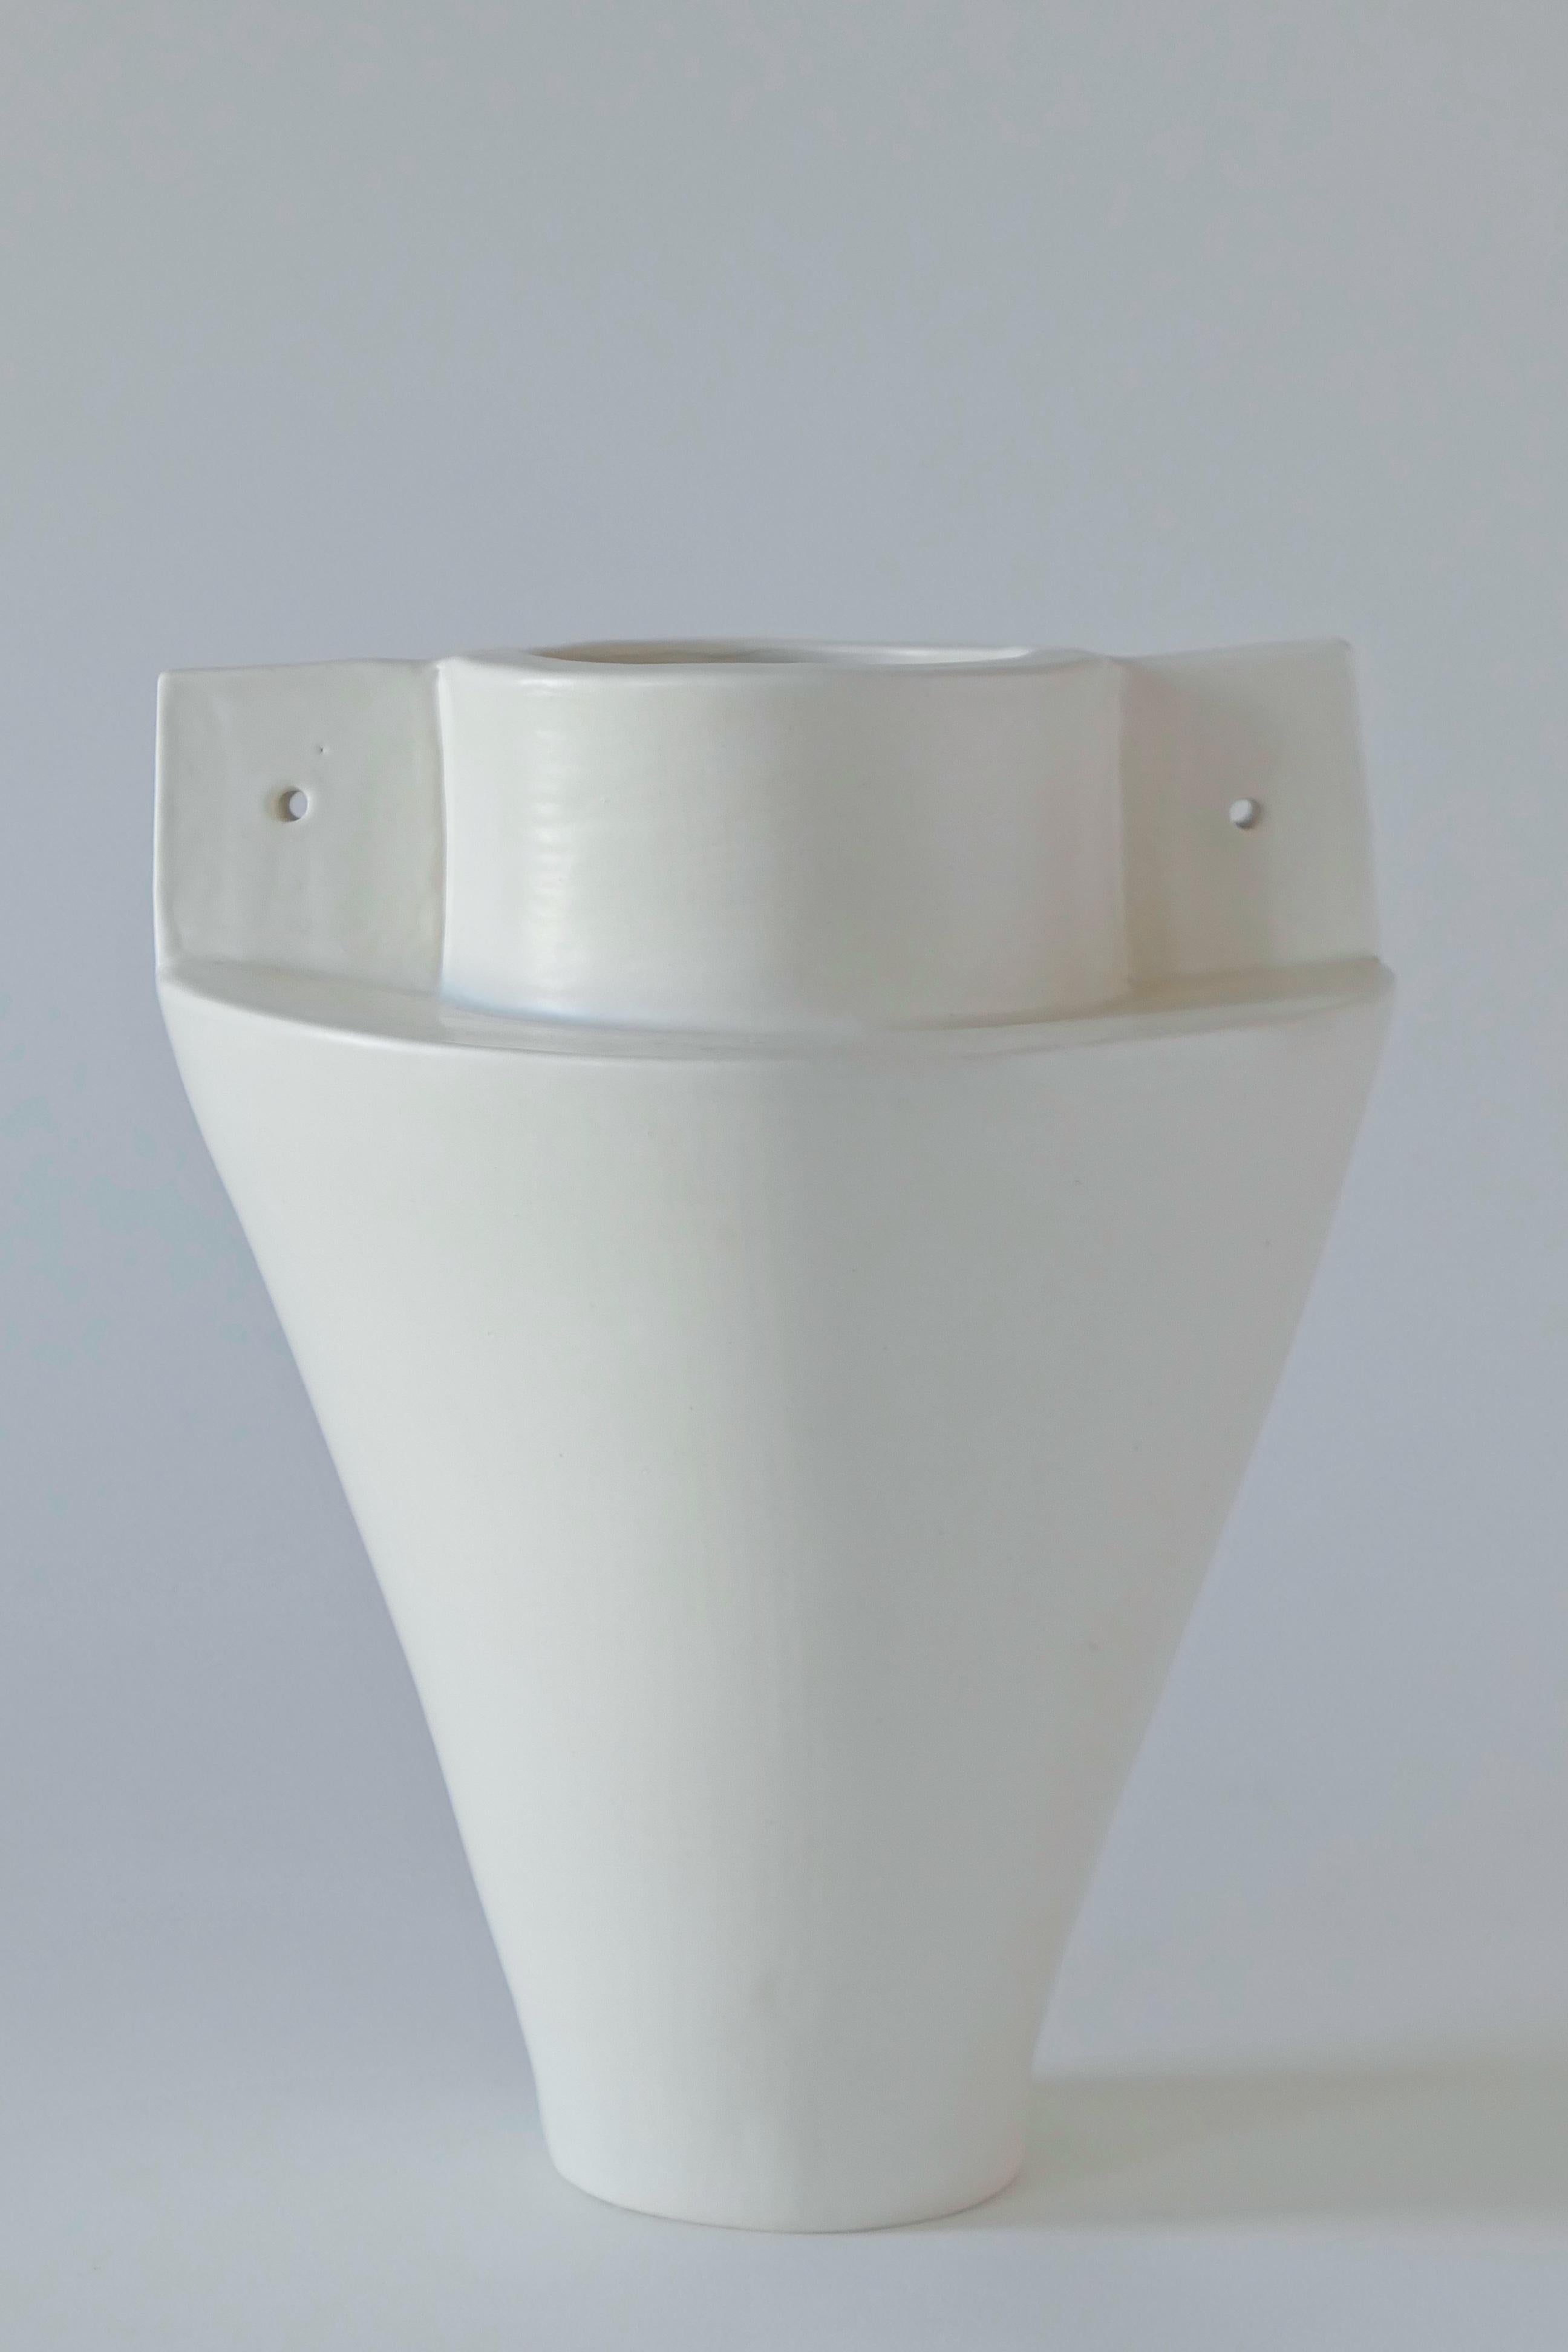 Vase en grès blanc, fini avec une glaçure blanche et douce. Ce vase est construit à la main à partir de plaques d'argile.

Karina Vieira est une céramiste basée à Brooklyn qui se concentre sur les récipients fabriqués à la main. 

Son travail fait